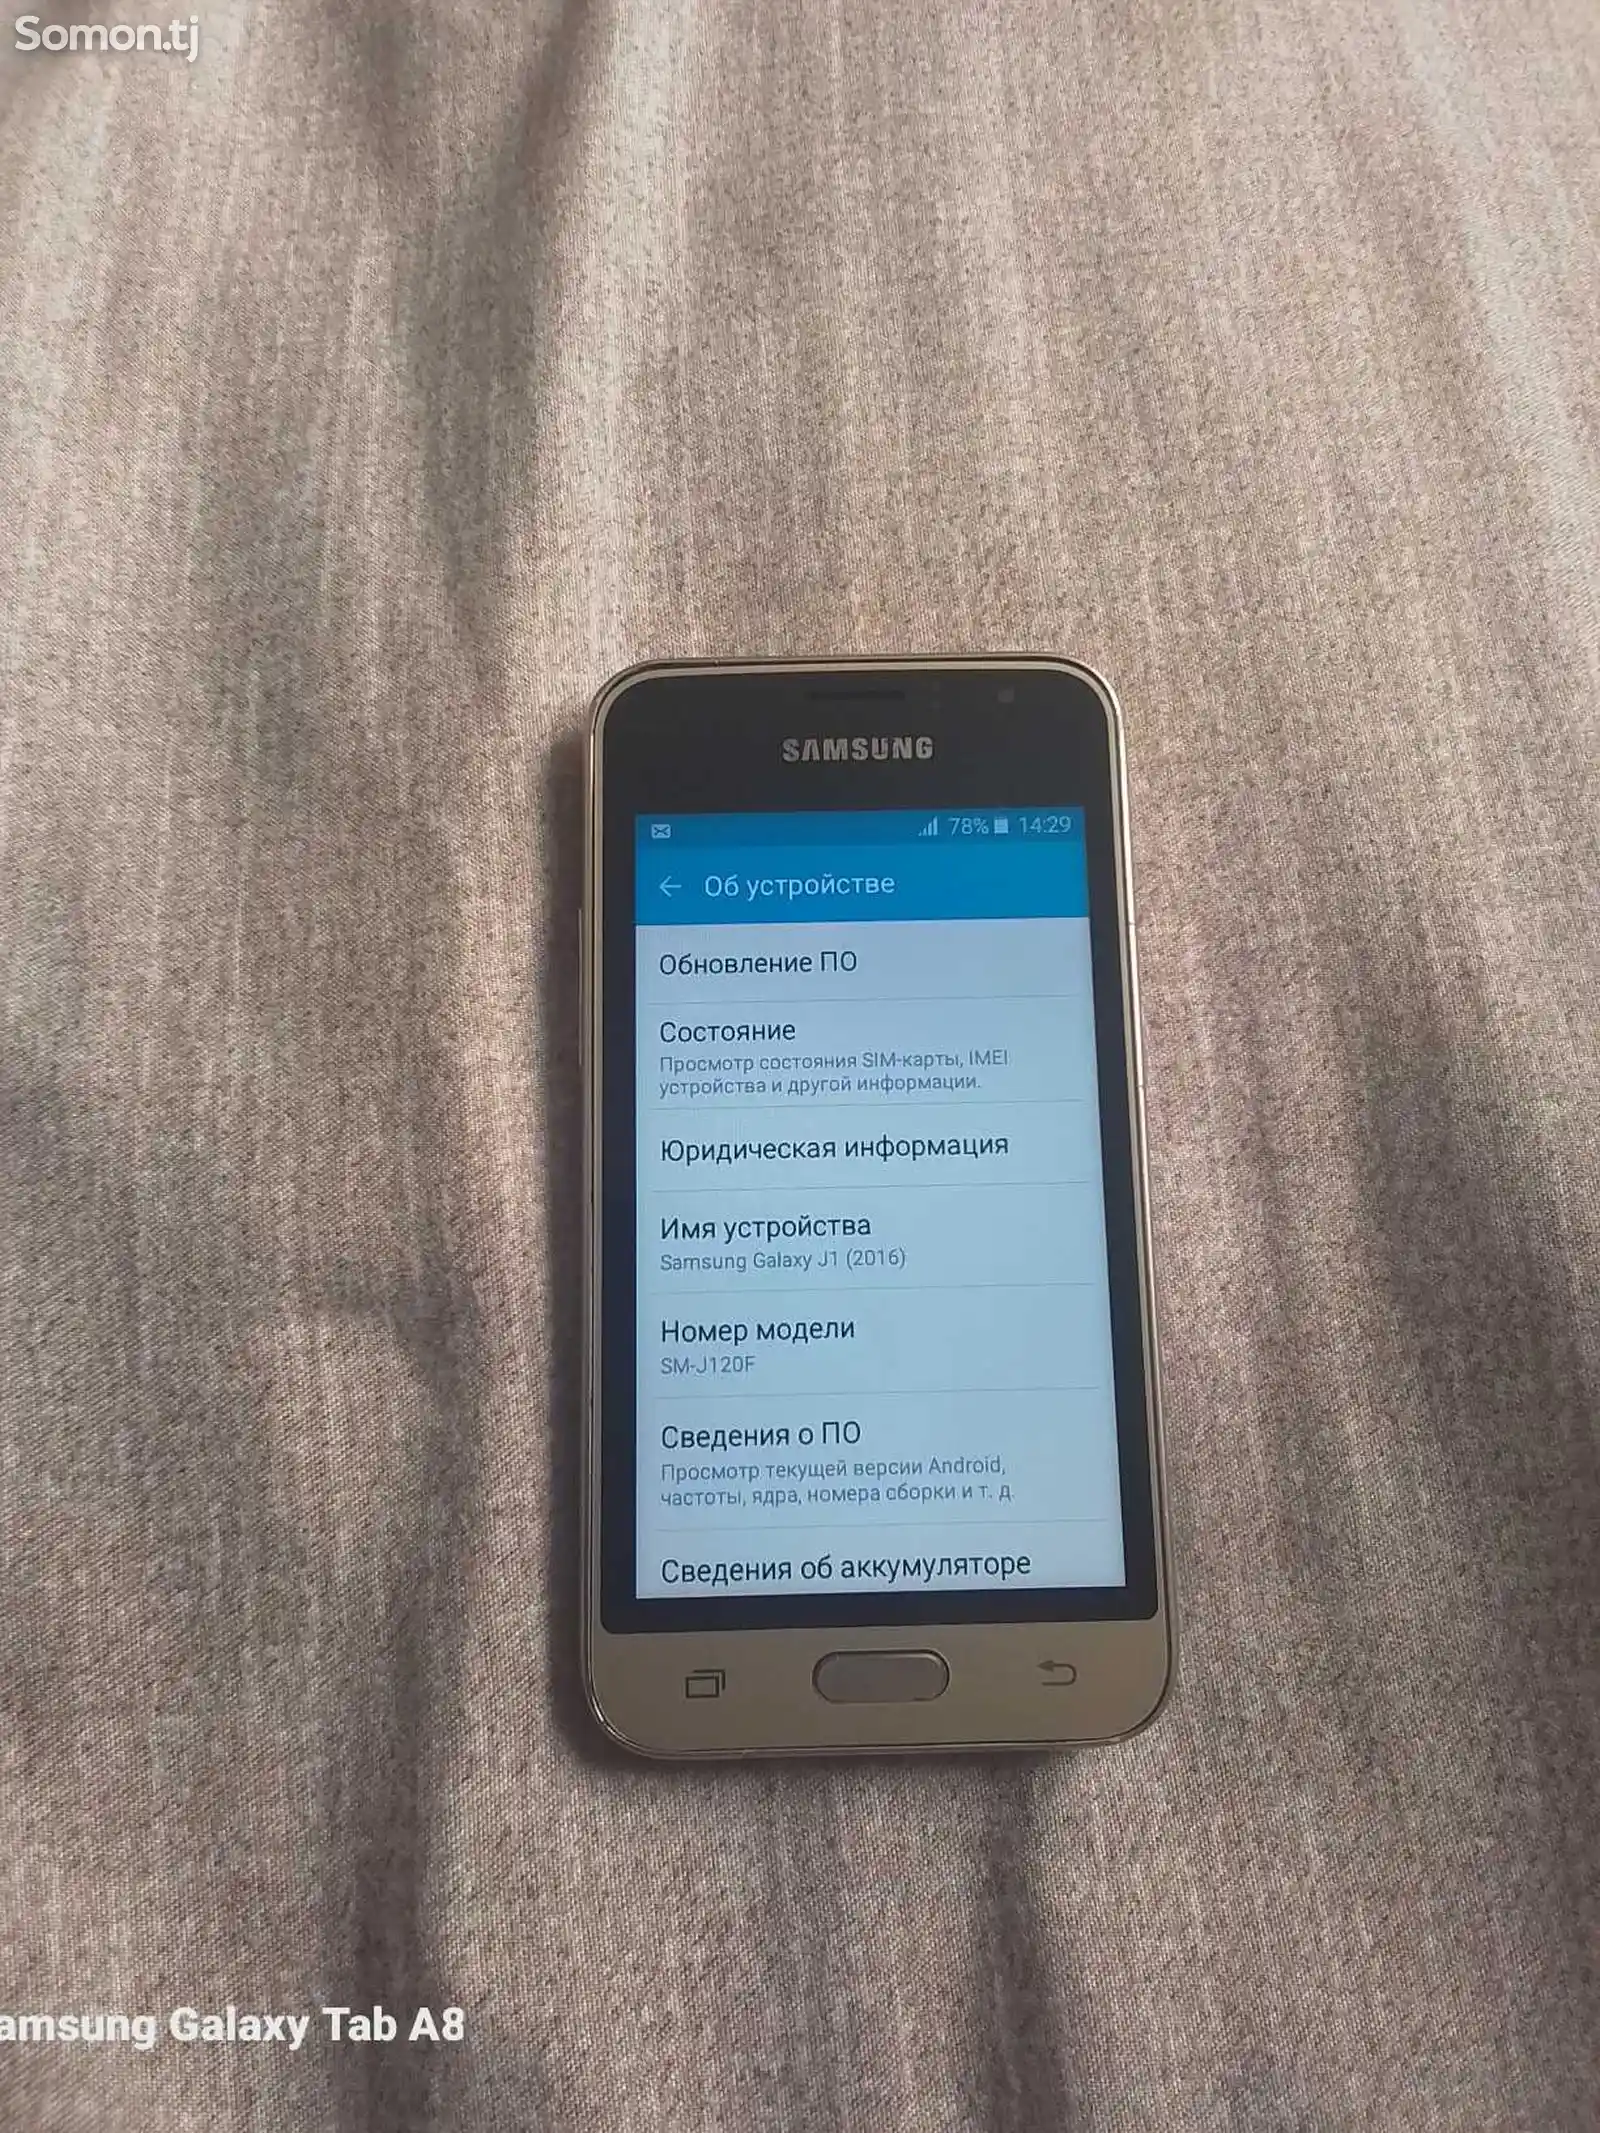 Samsung Galaxy J1 8gb-6